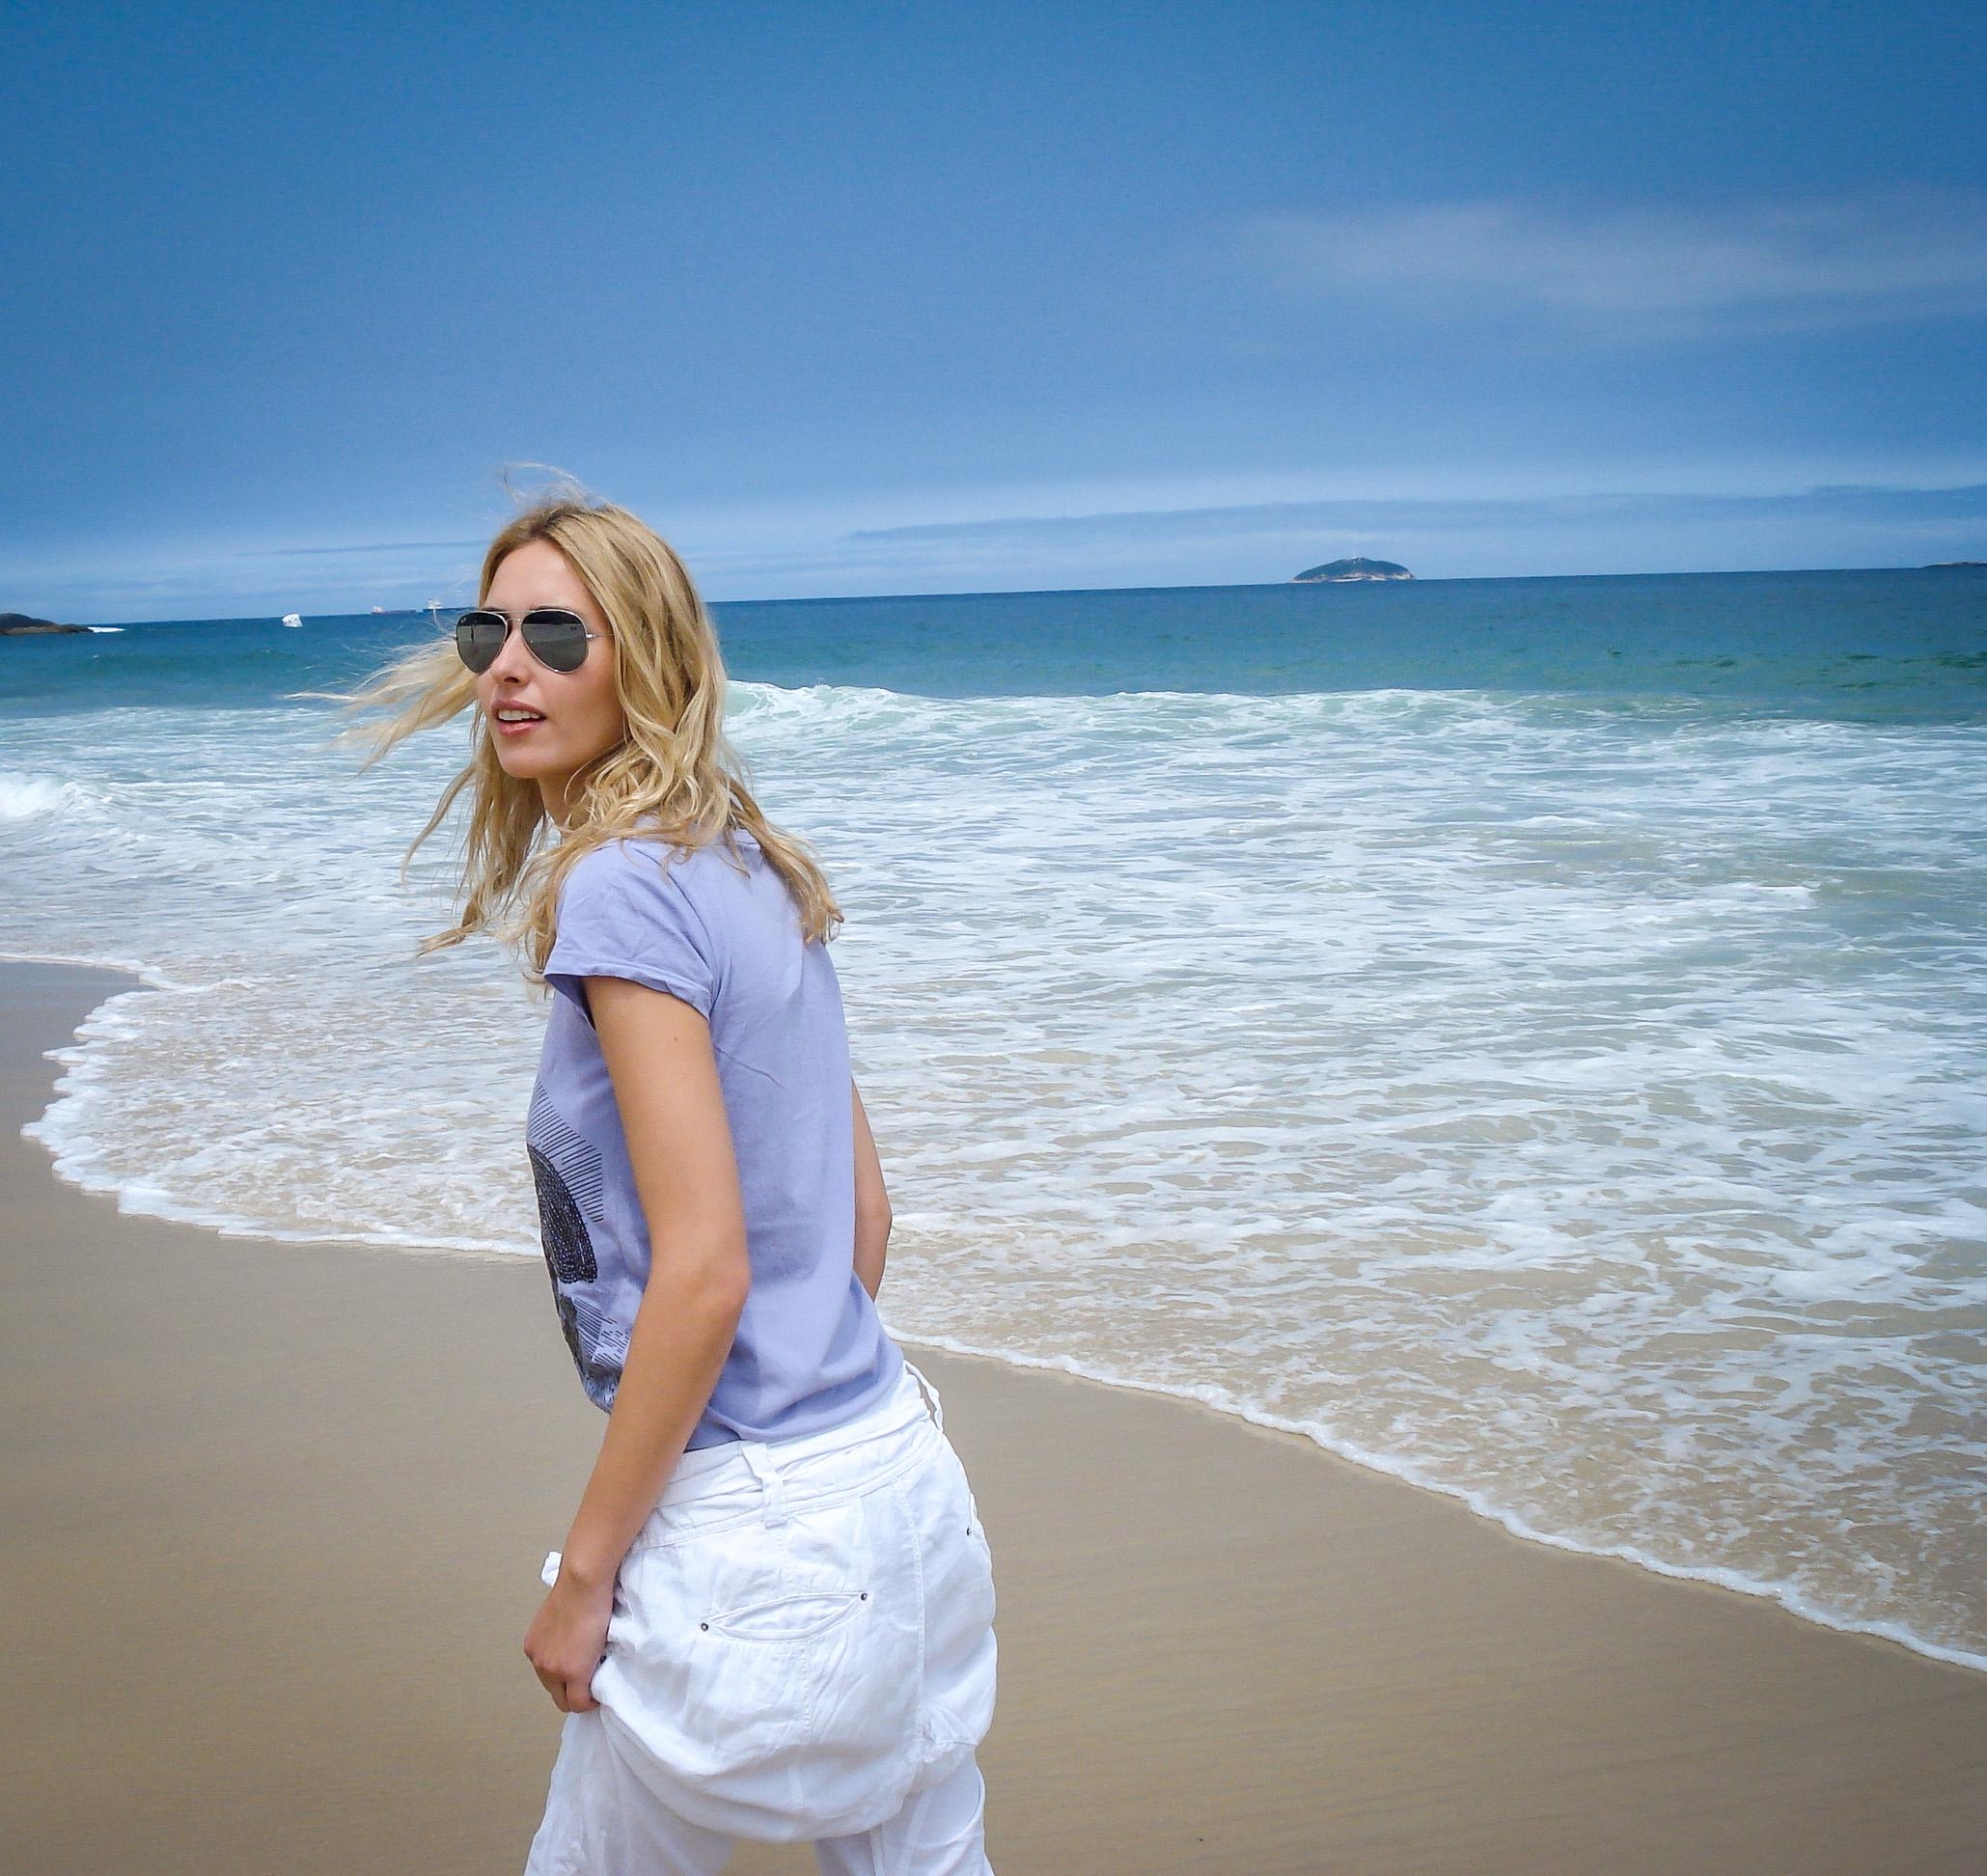 #dasbinich Milena, brasilianerin, #beachgirl, Design-, Kunst-, Fotografie- & Reiseverrückt. ♥️ #werbistdu @kontrastReich